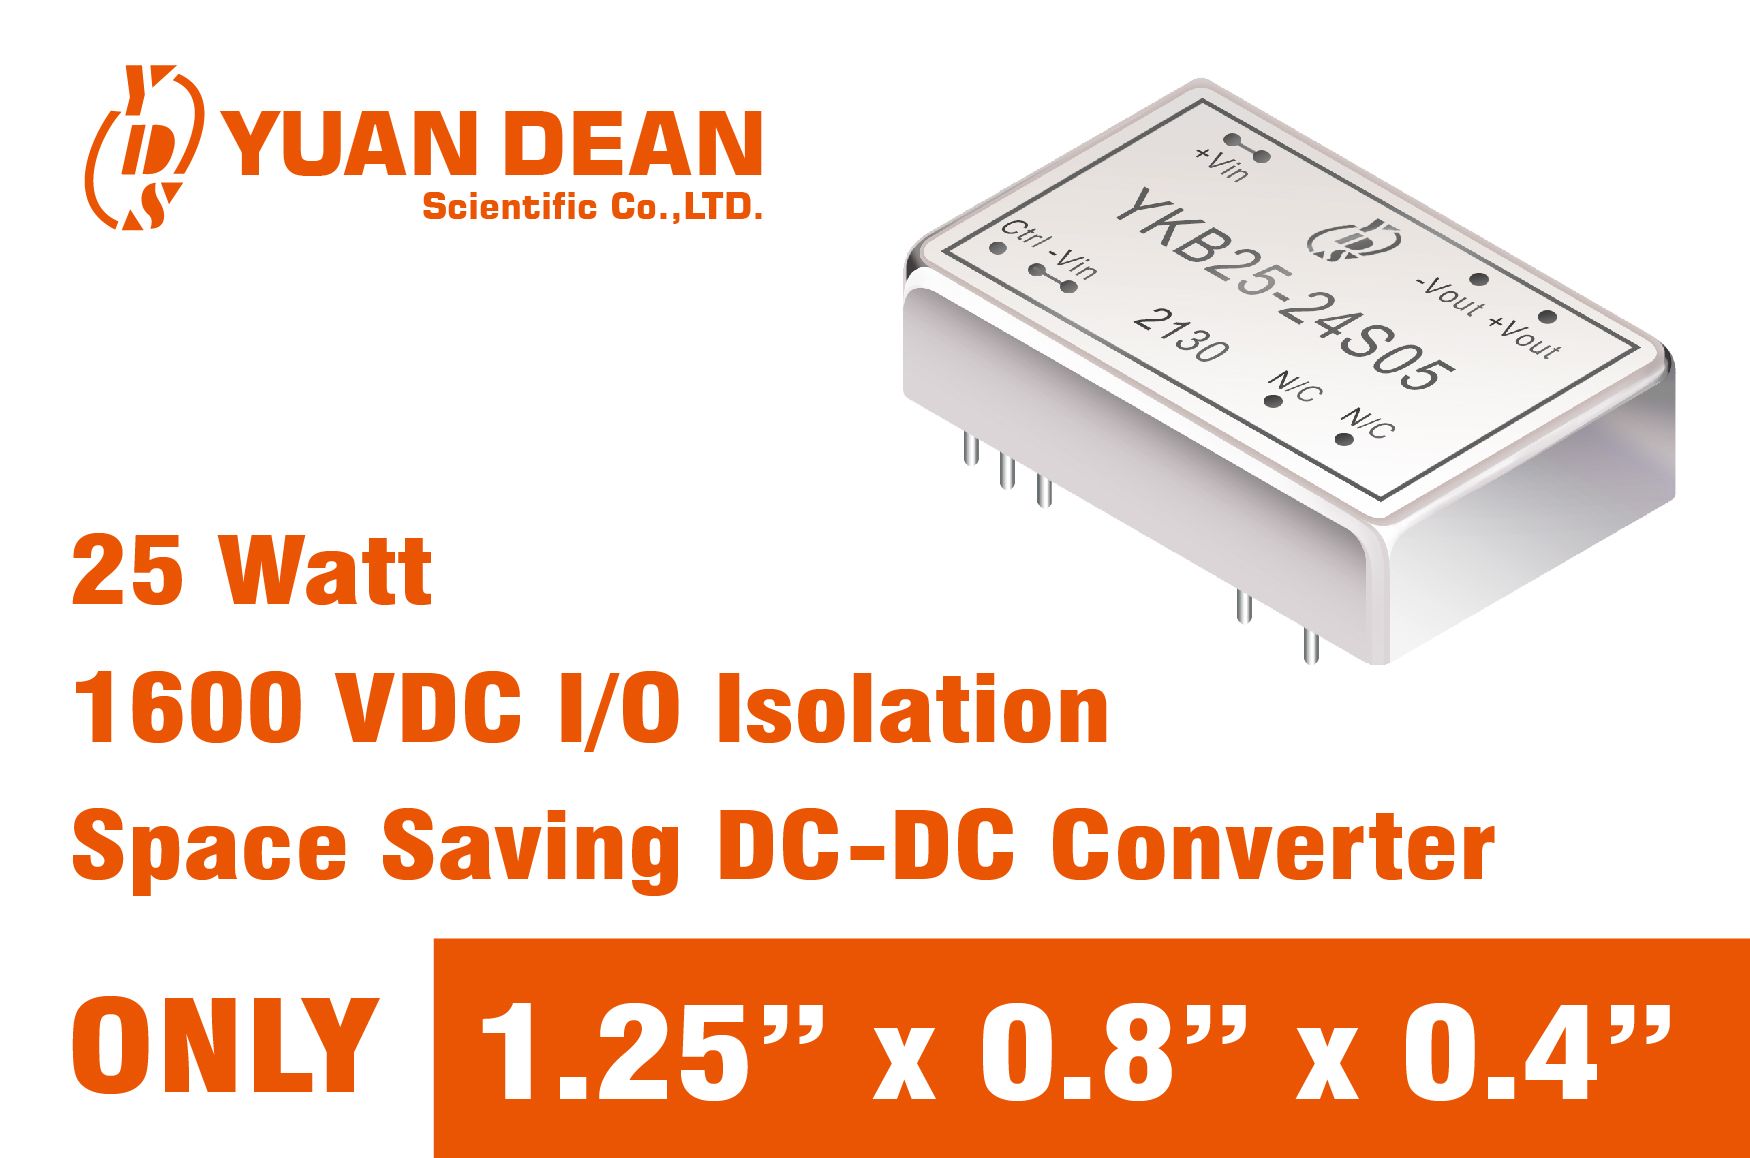 Konverter daya DC-DC berukuran kompak 25 watt